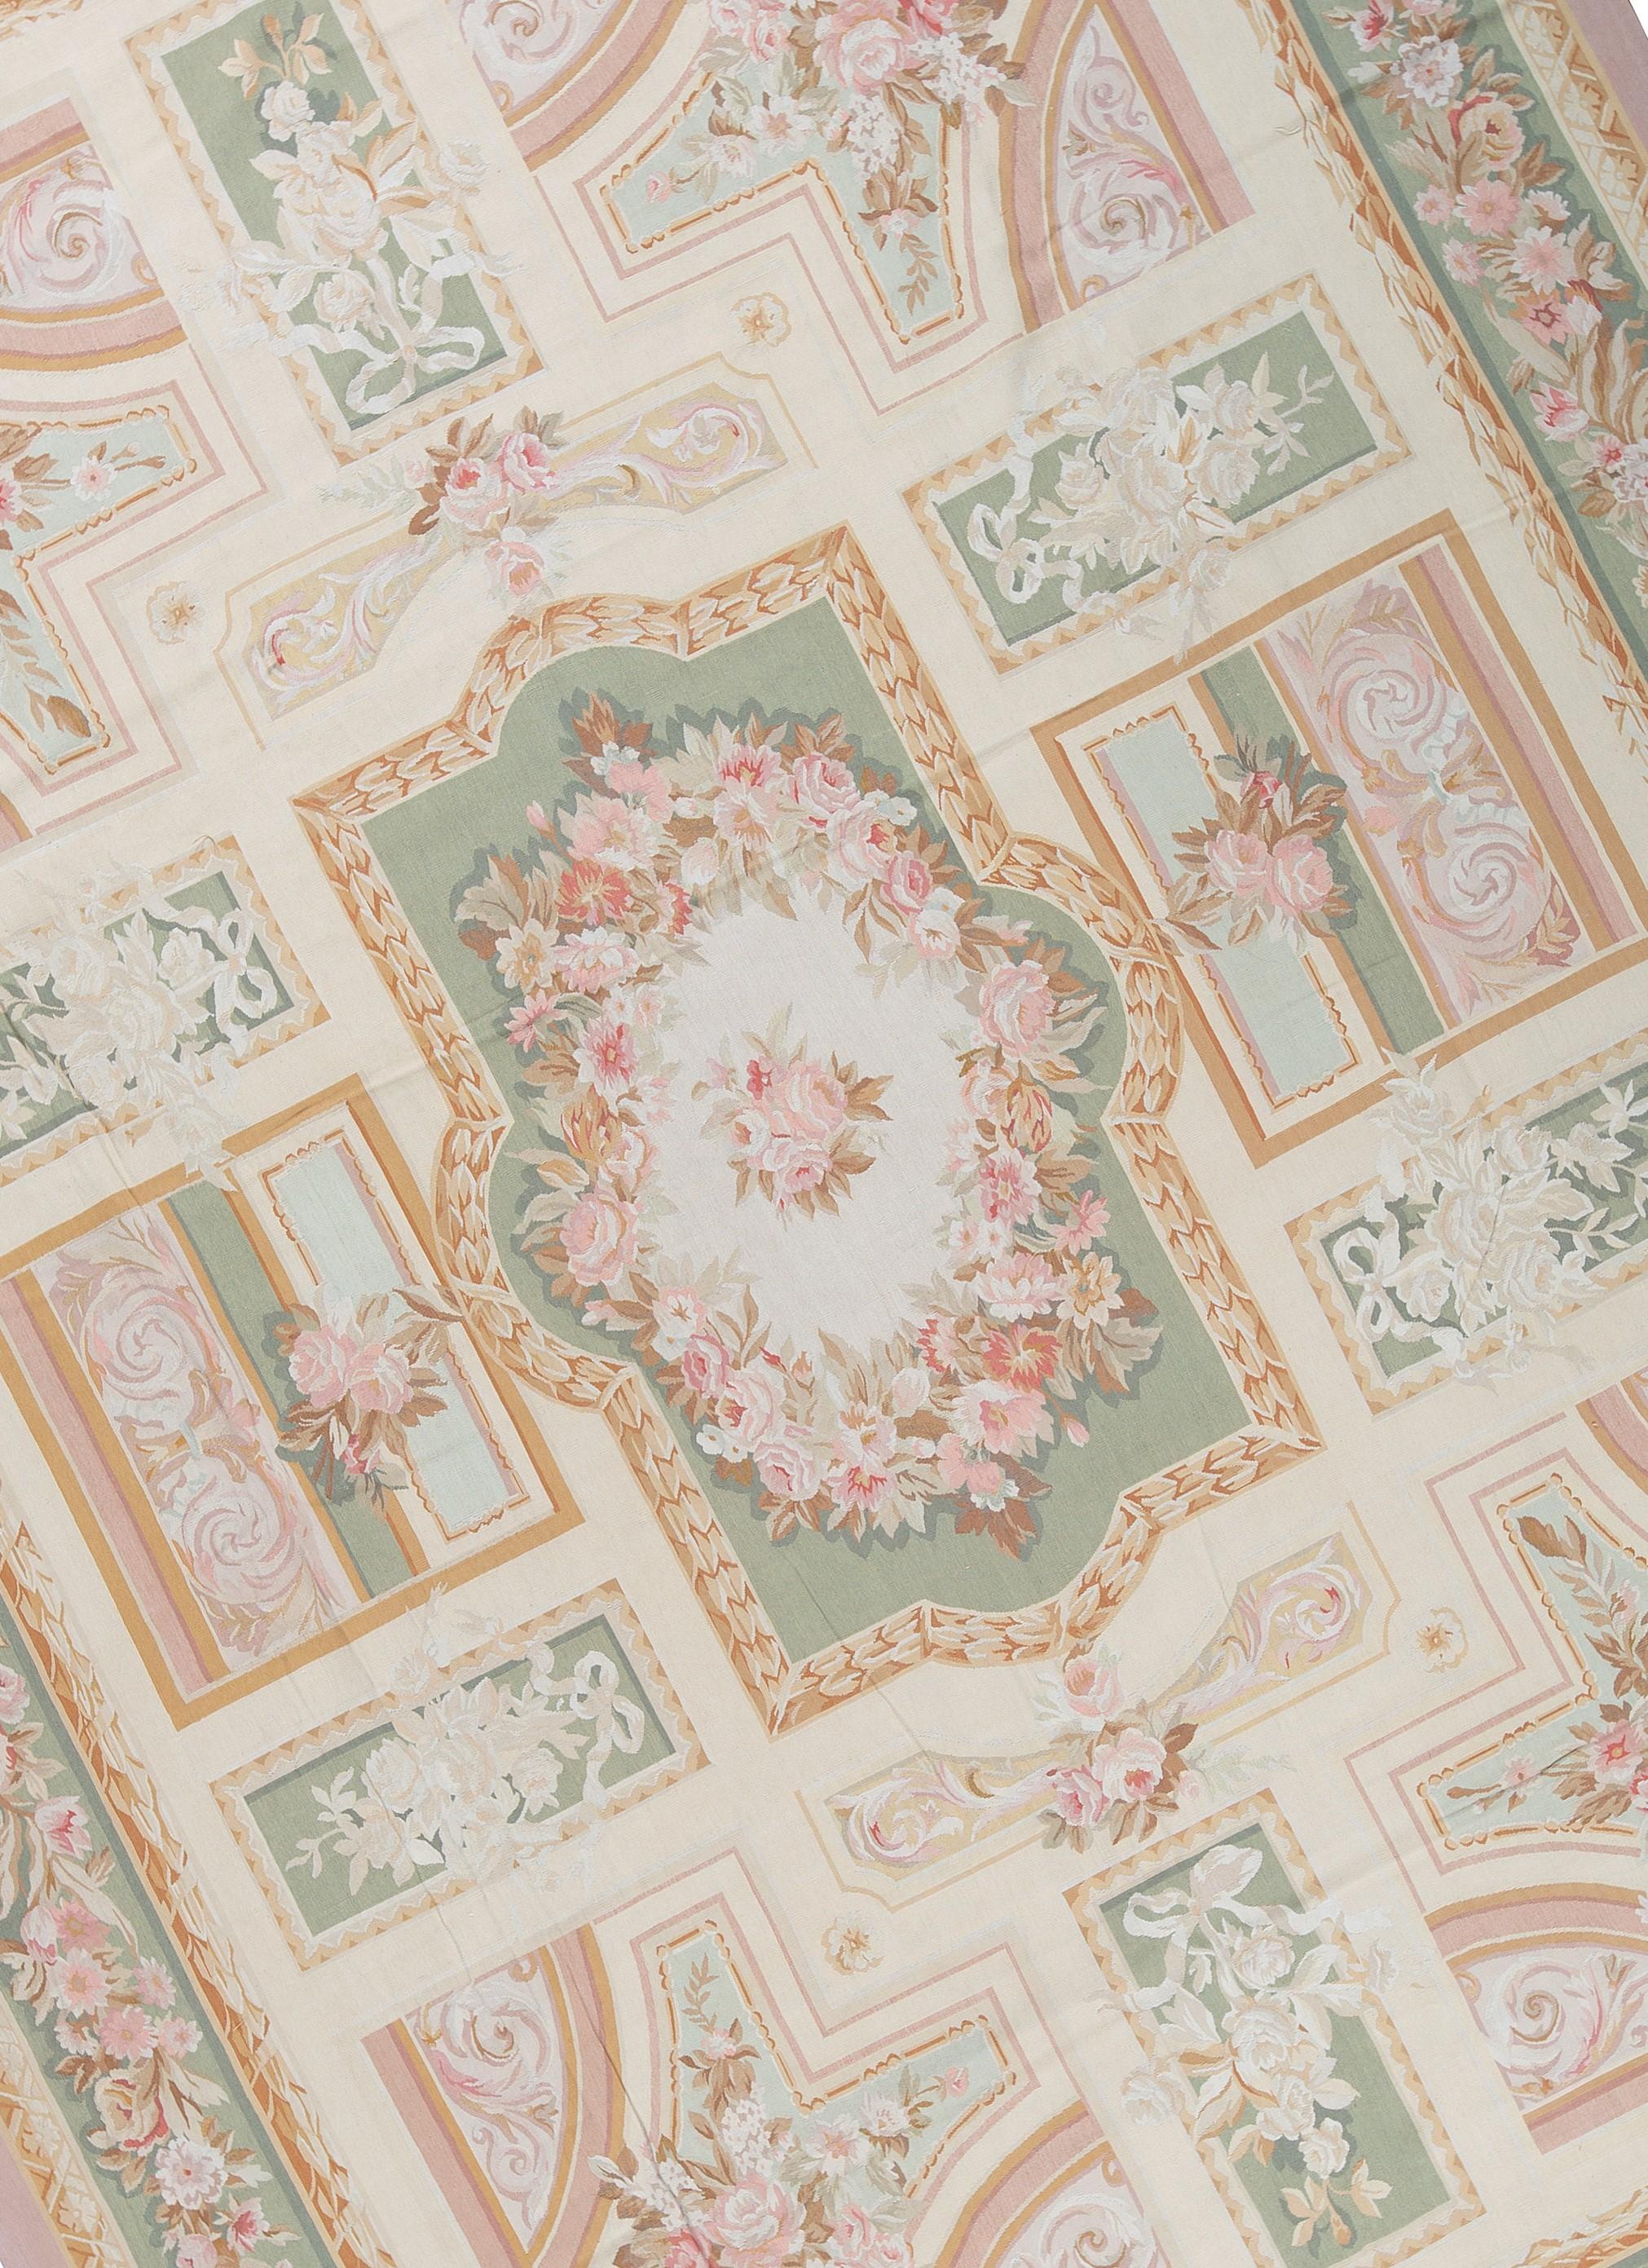 Recréation tissée à la main du classique tapis français d'Aubusson à tissage plat que l'on trouve dans les plus belles maisons et palais depuis la fin du 17e siècle. Taille 11' x 16' 2